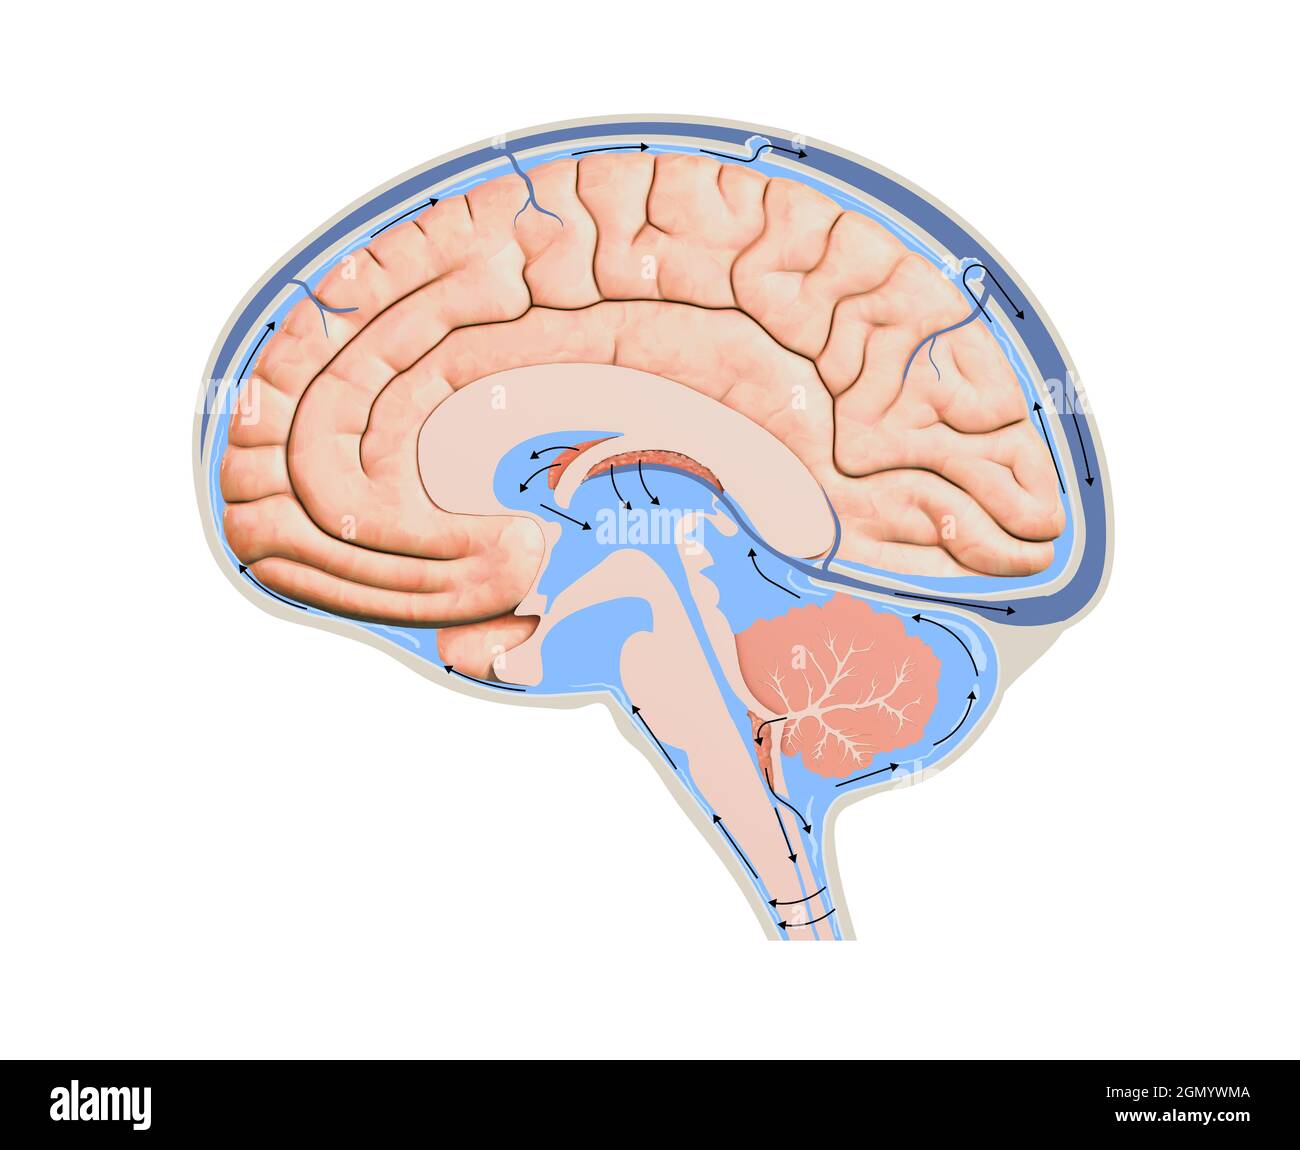 Diagramm zur Darstellung von Liquor Liquor im zentralen Nervensystem des Gehirns. Gehirnstruktur, 2d-Grafik, Illustration Stockfoto